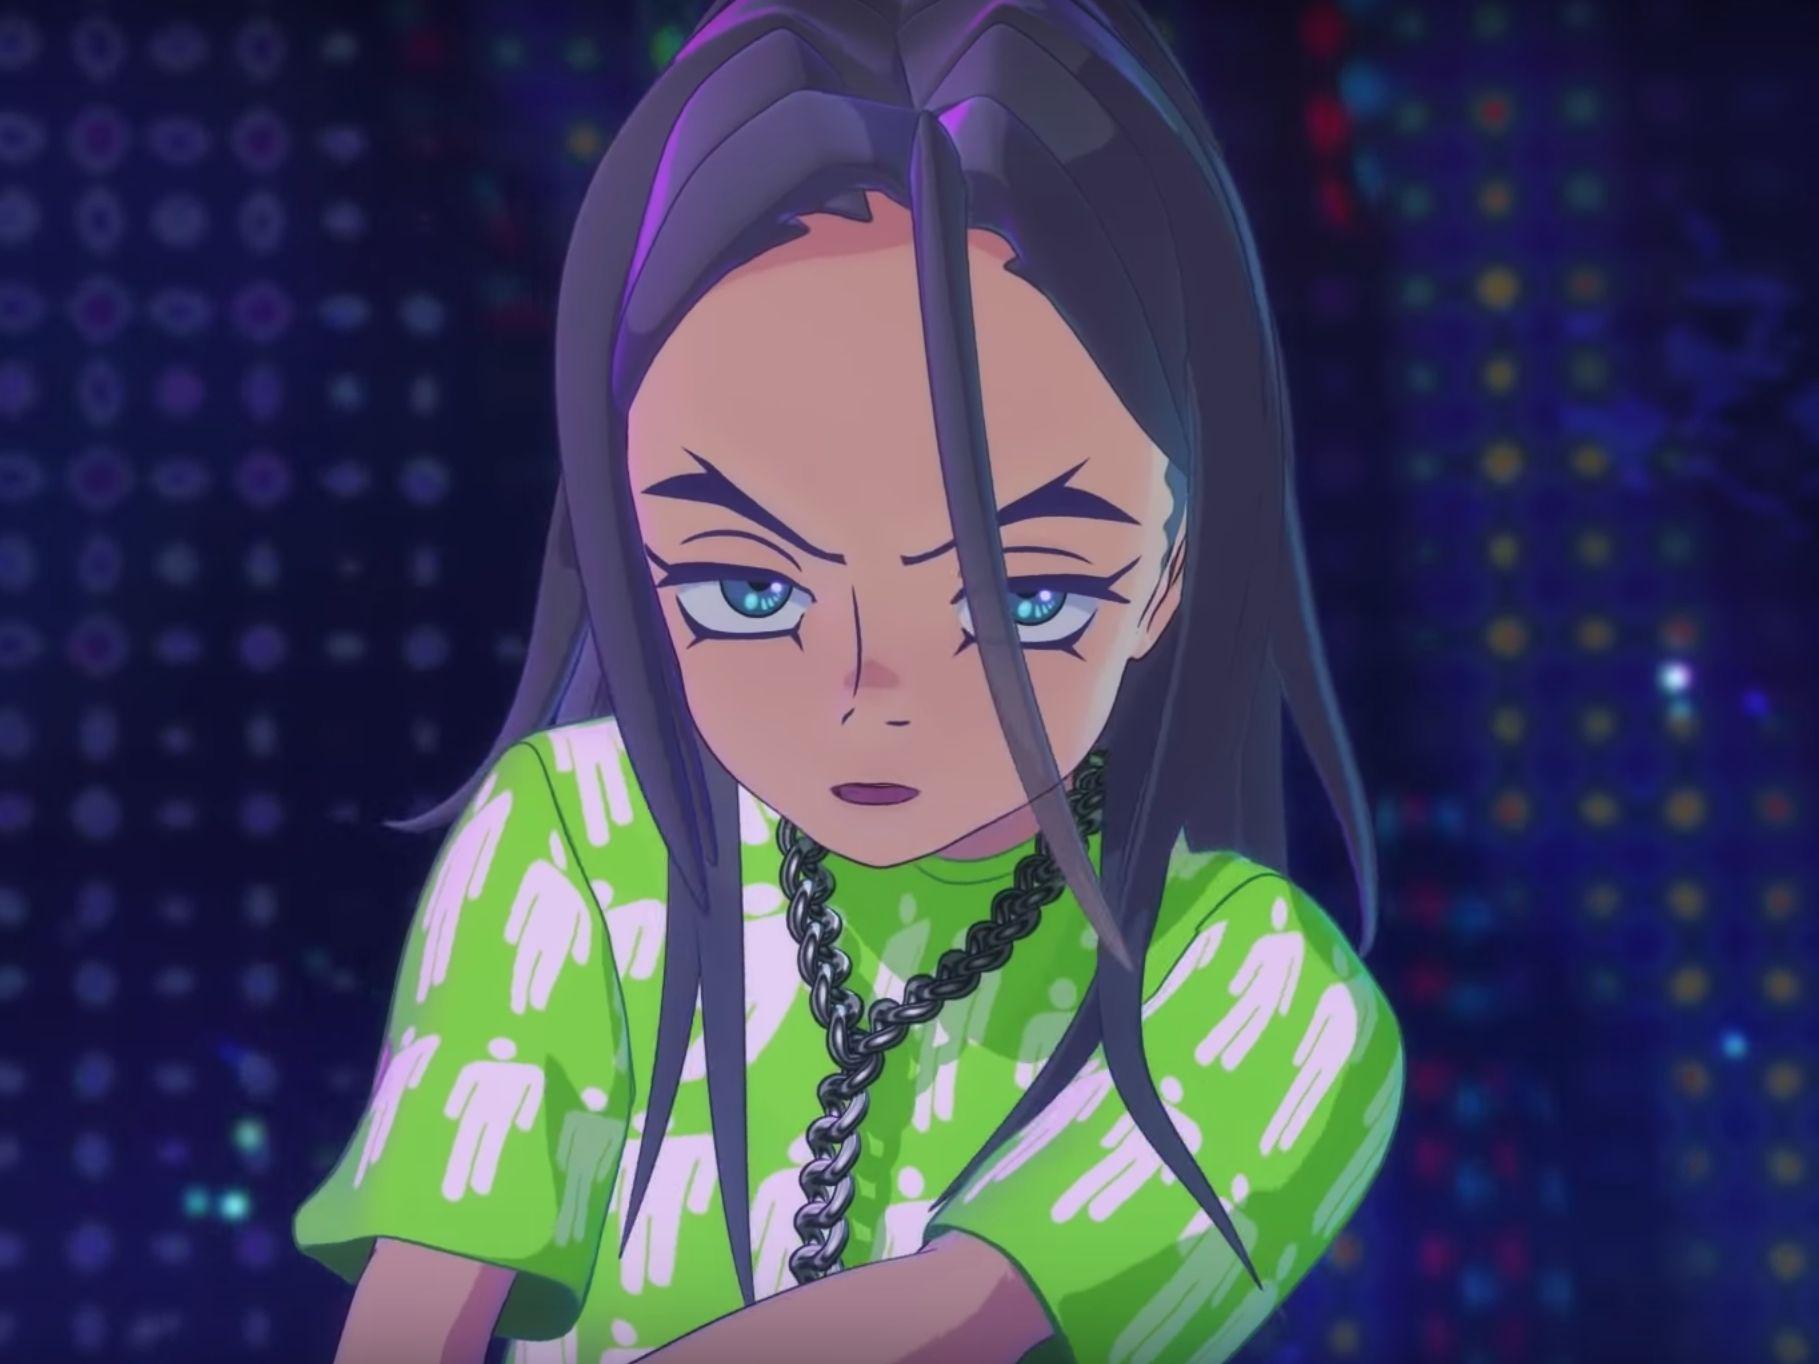 Anime Inspired Music Videos For Music Loving Otaku